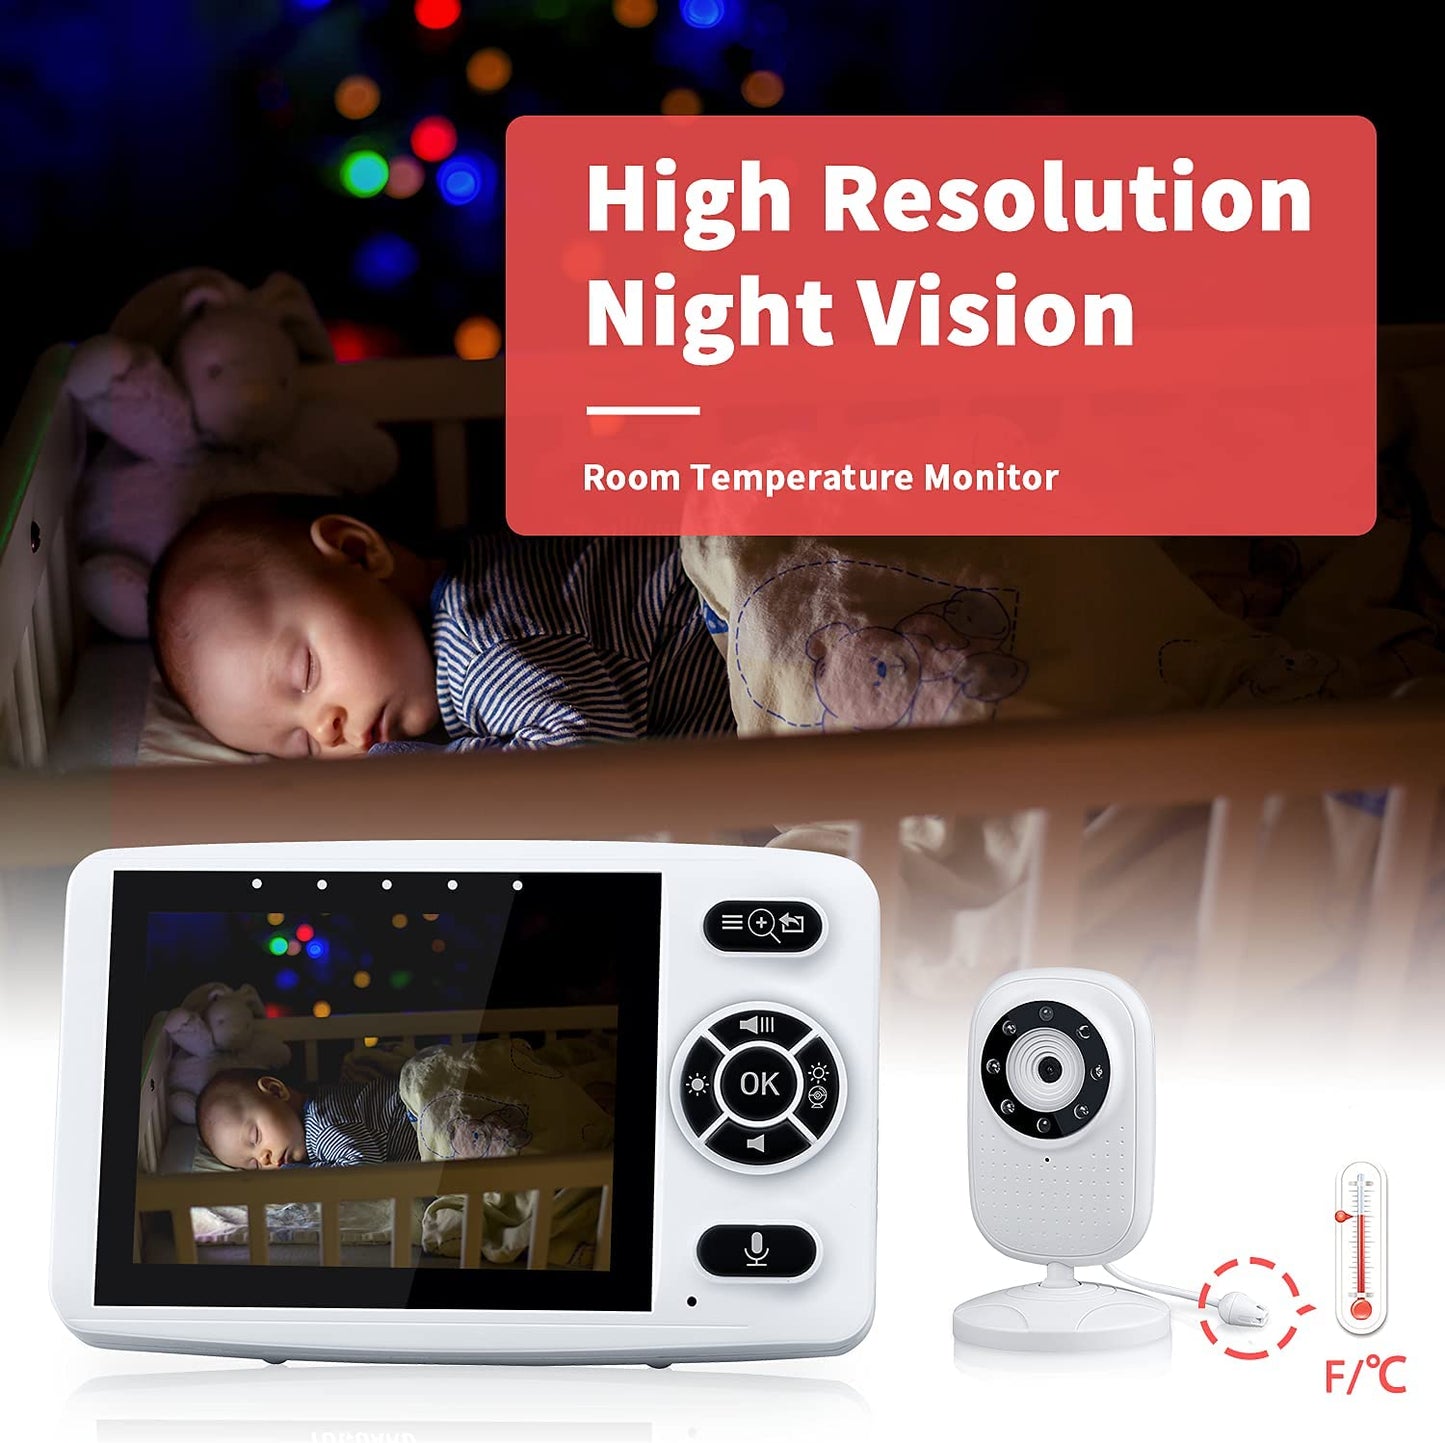 Monitor de bebê com câmera e visão noturna, 3,5''